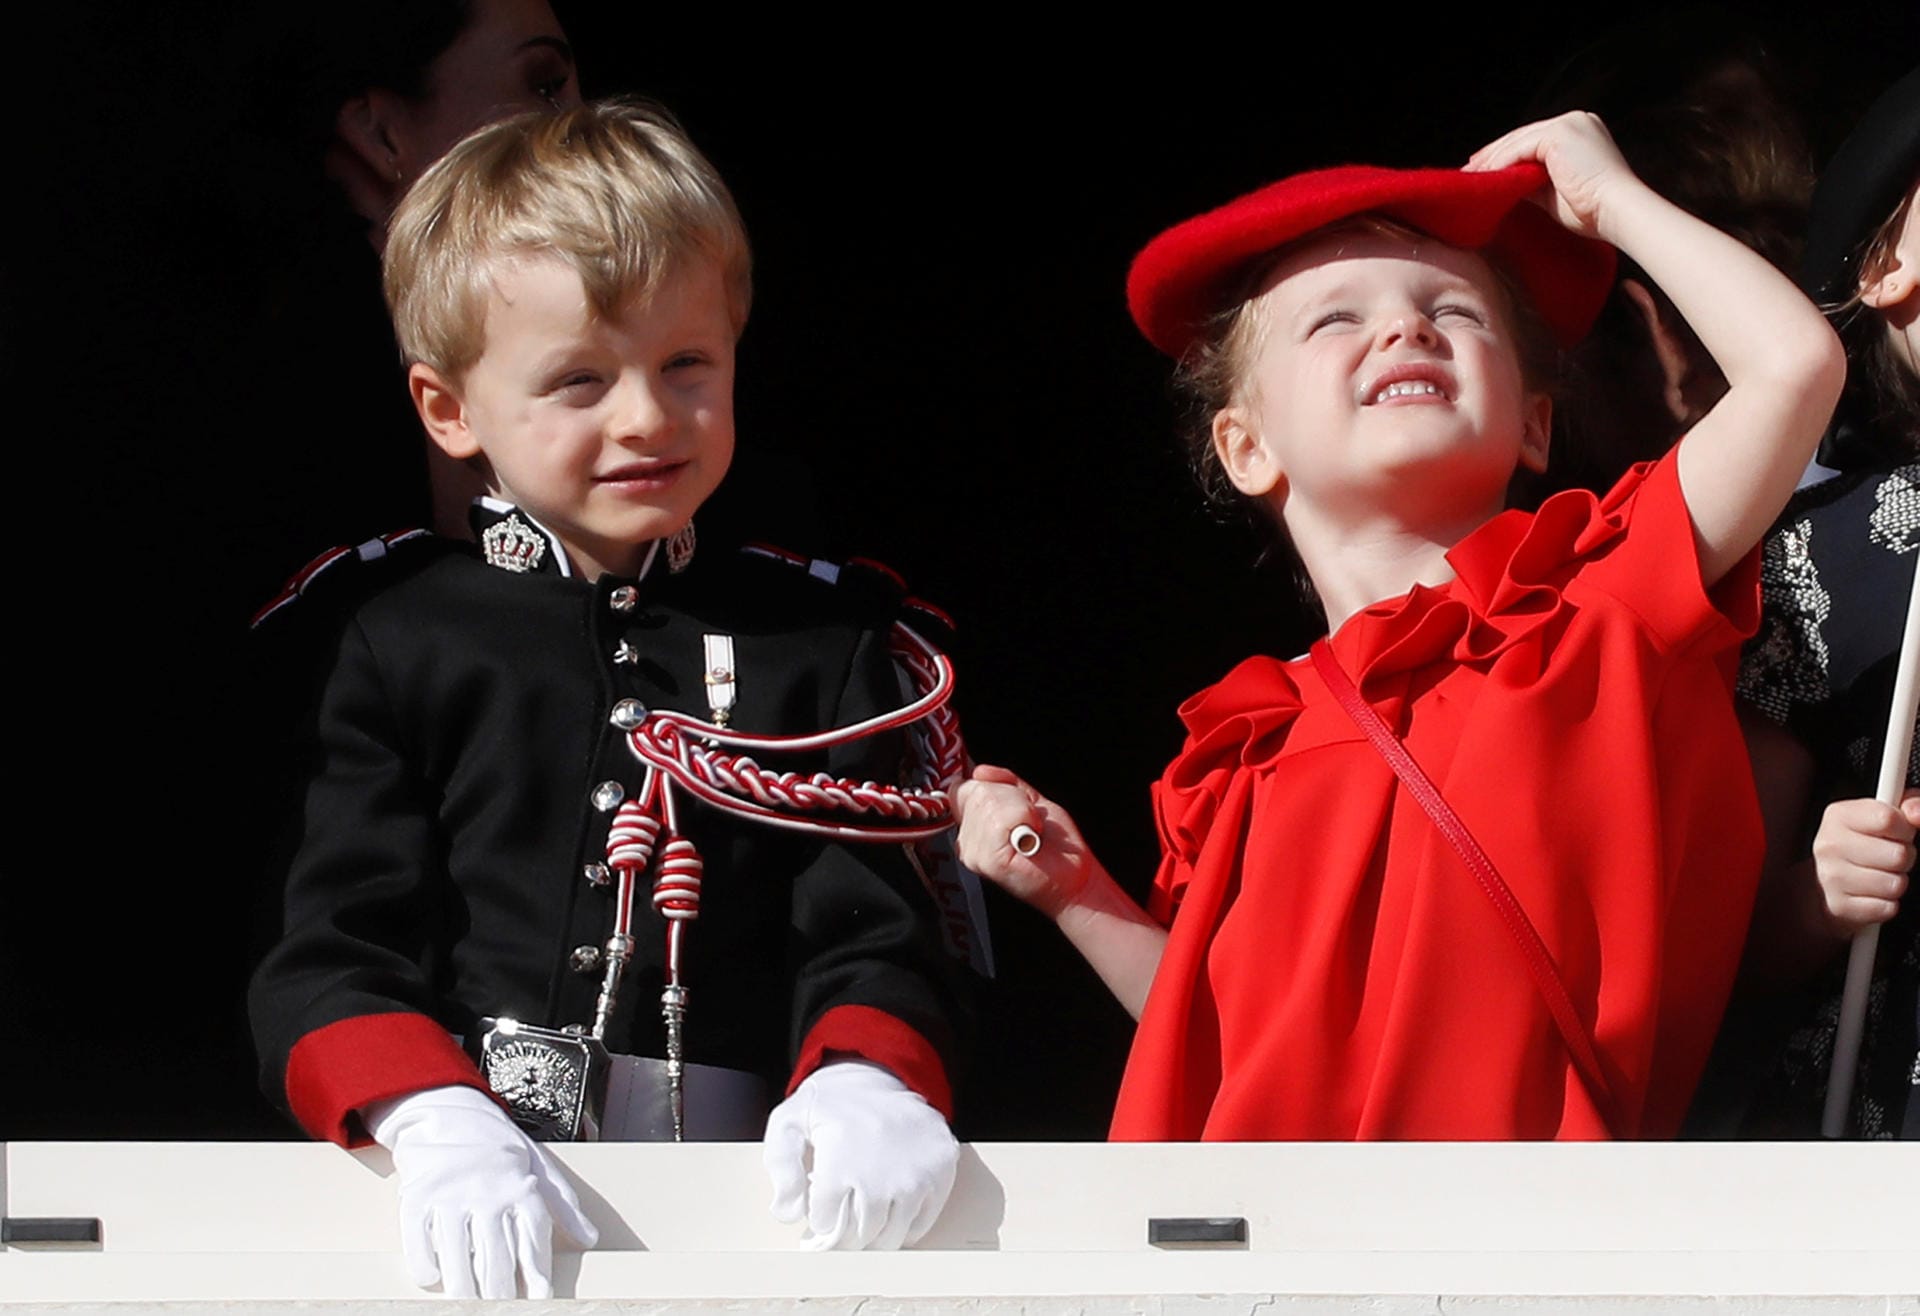 Seine Zwillingsschwester Gabriella hingegen trägt einen Look ganz in Rot.